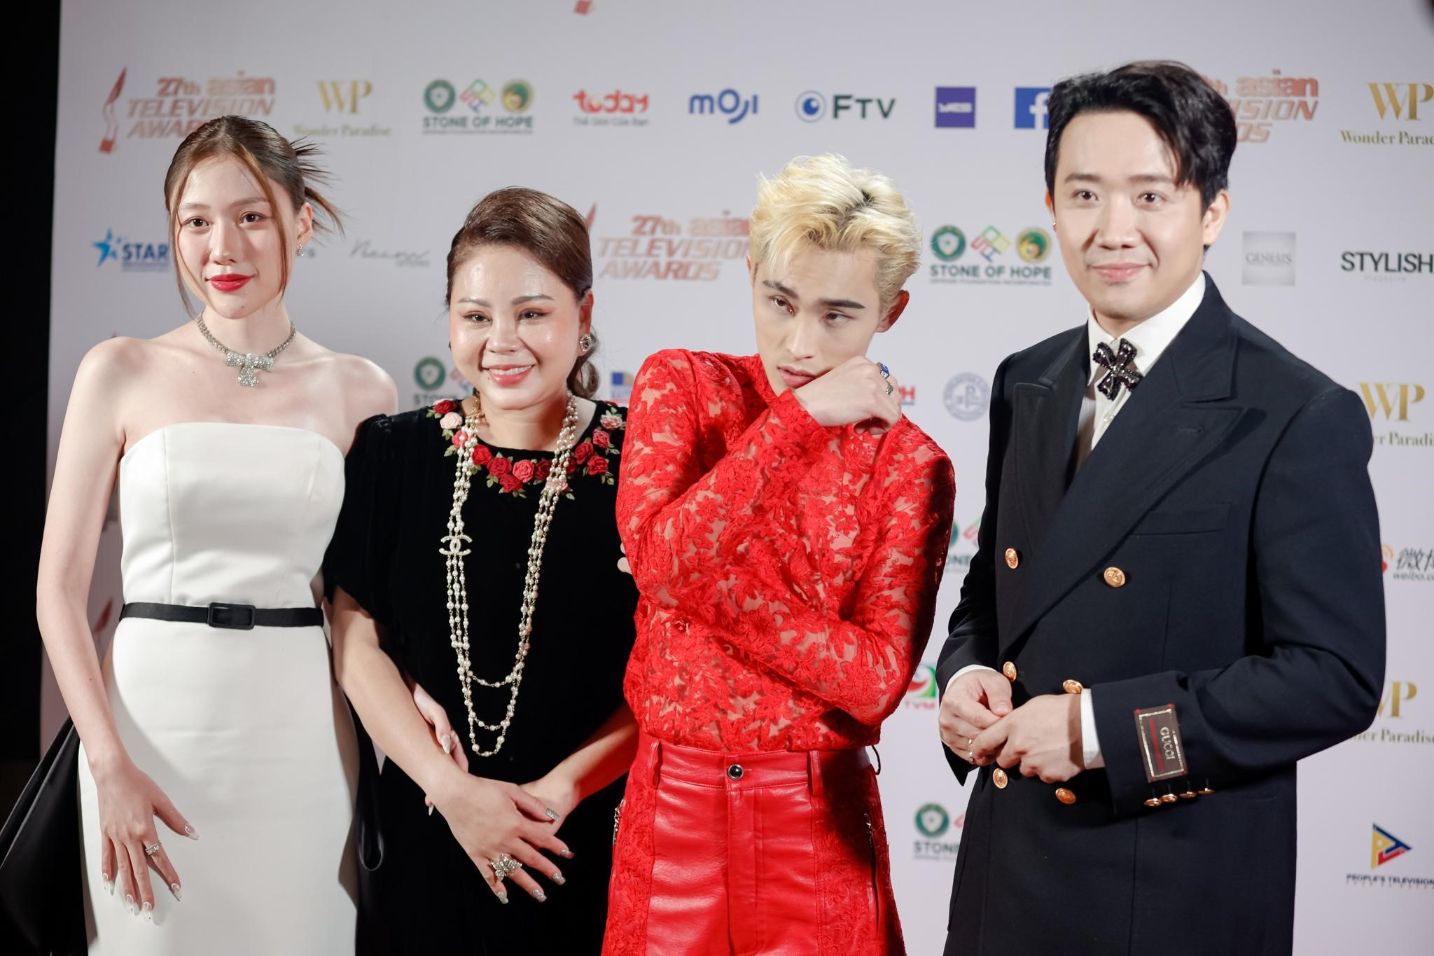 Trấn Thành Uyển Ân Lê Giang Wren Evans rạng rỡ trước sự đón tiếp nhiệt tình của khán giả Đêm trao giải Asian Television Awards 2022: Trấn Thành trao cúp cùng ngôi sao Hồng Kông